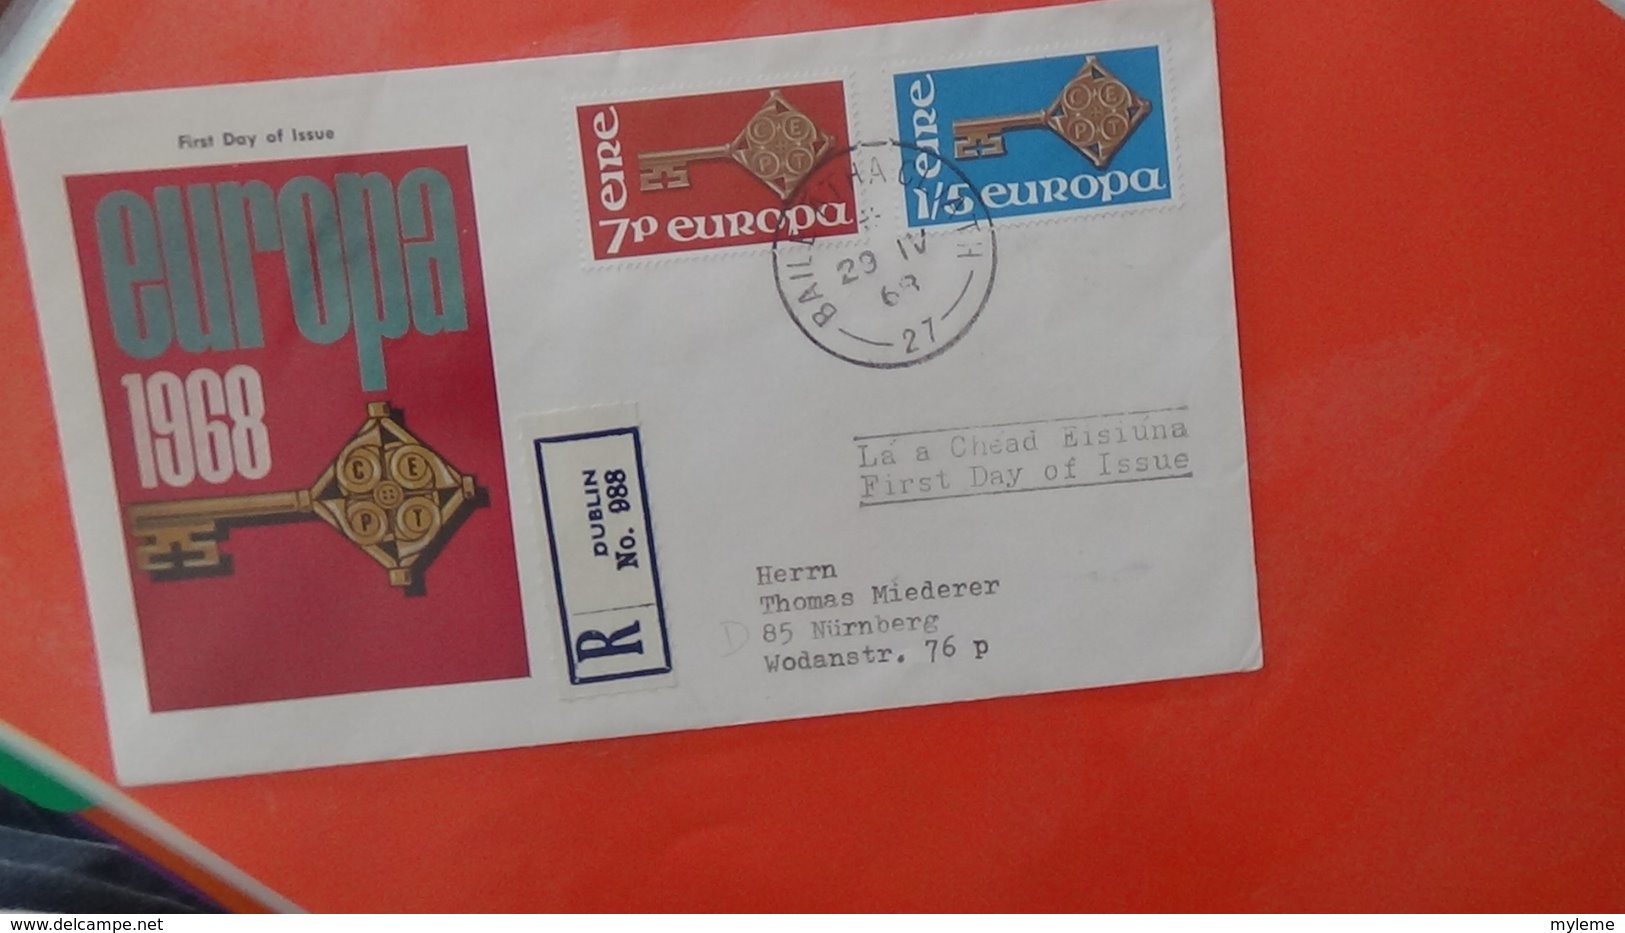 Dispersion d'une collection d'enveloppe 1er jour et autres dont 114 EUROPA entre 1978 et 1984